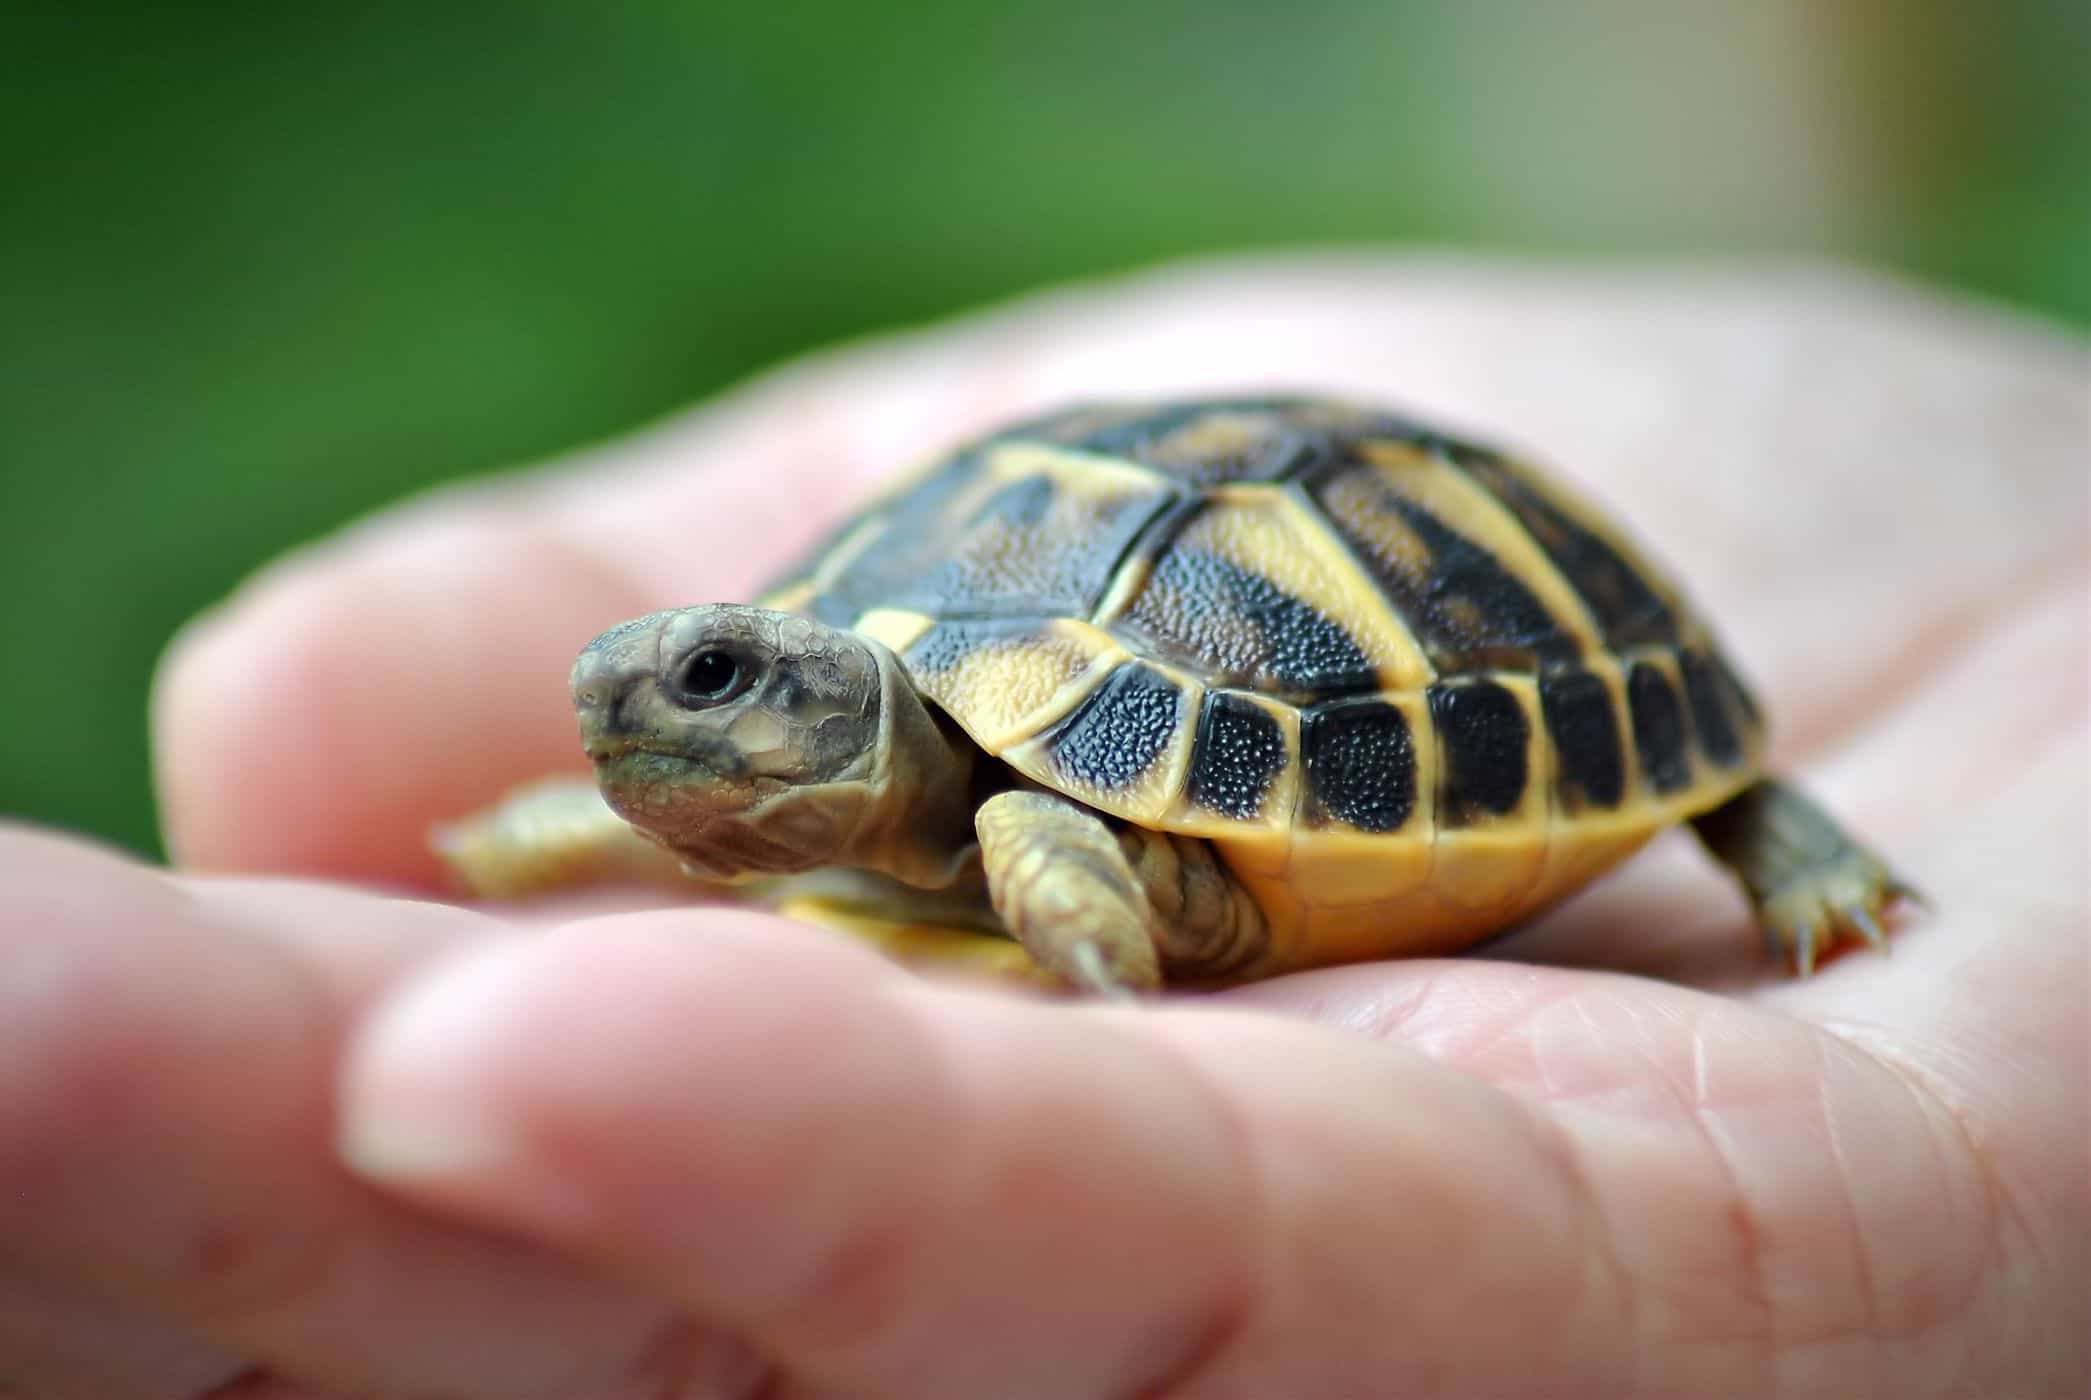 η διατήρηση των χελωνών αυξάνει τον κίνδυνο μόλυνσης από τη σαλμονέλα